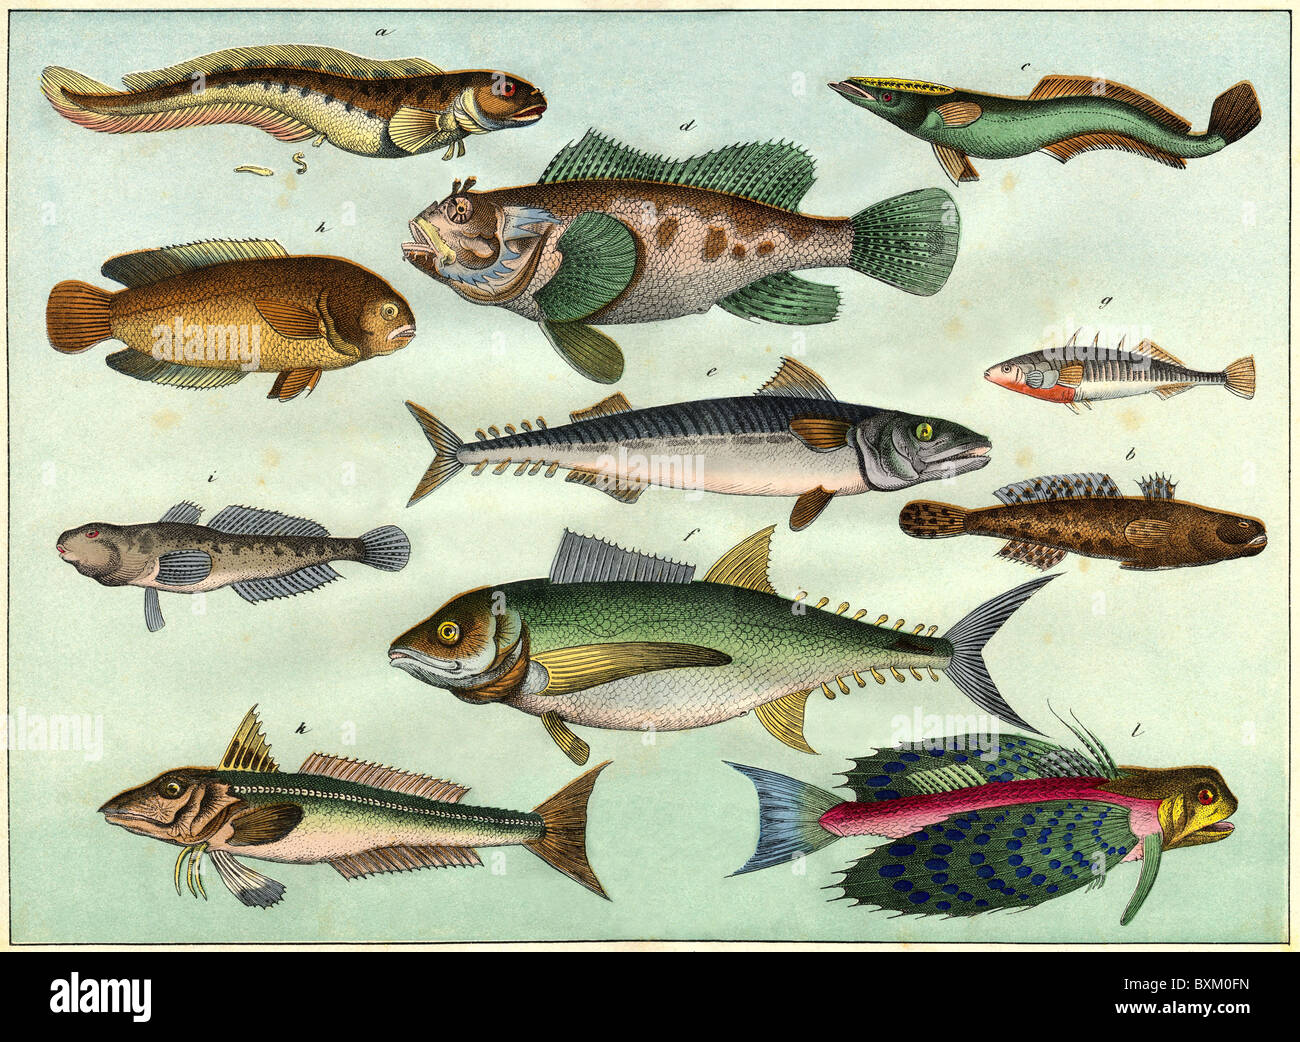 zoologie / animaux, poissons, lithographie décorative avec différentes espèces de poissons, Allemagne, 1870, droits additionnels-Clearences-non disponible Banque D'Images